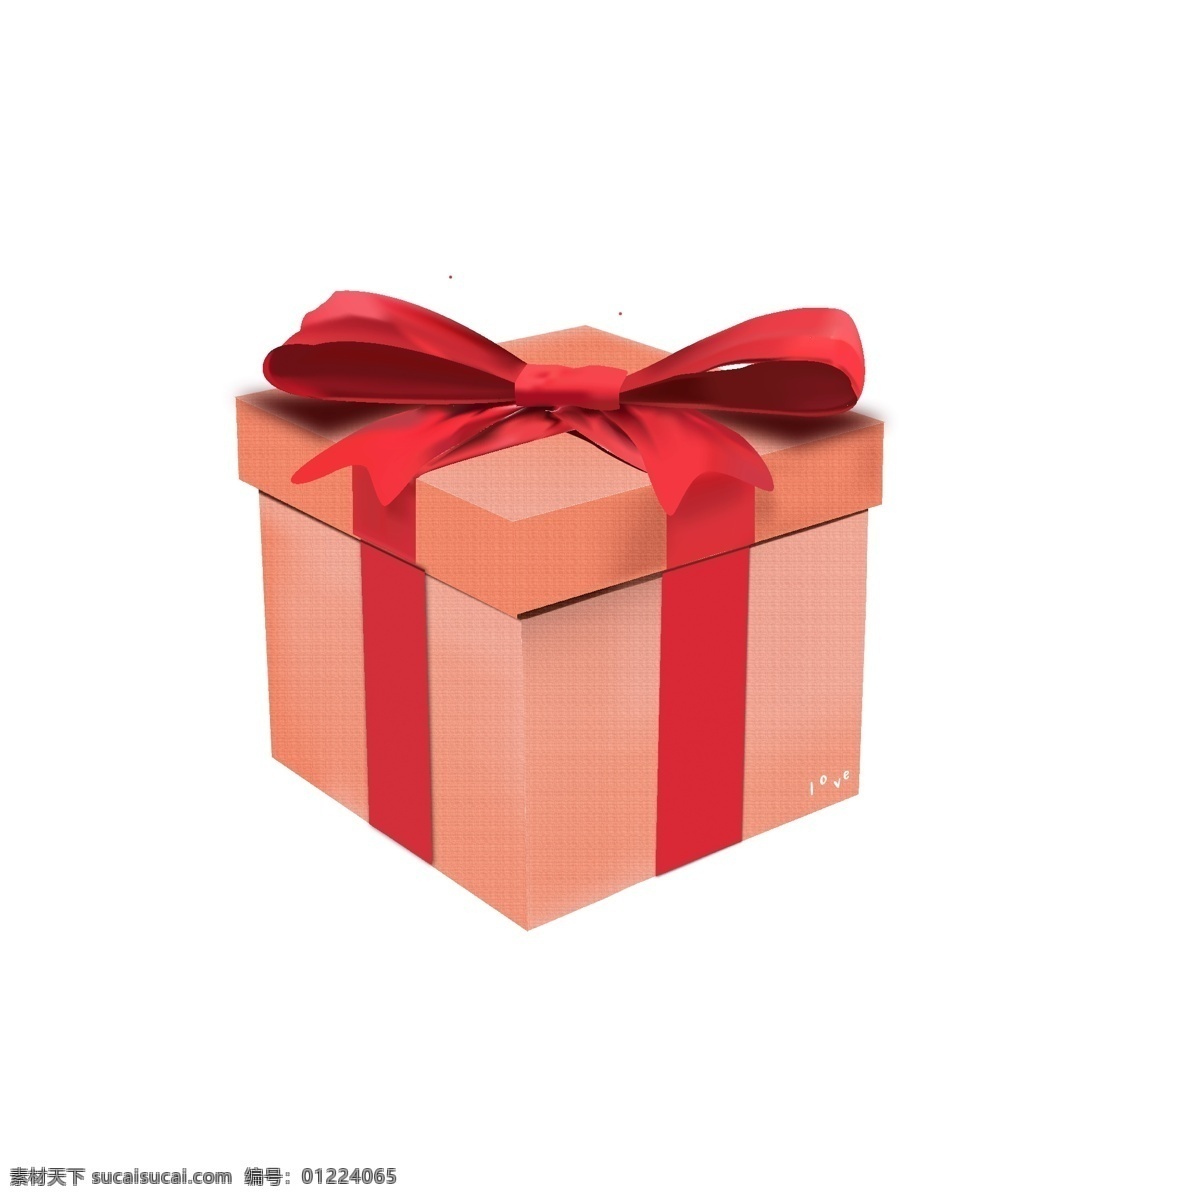 矢量 手绘 精美 礼品盒 商用 元素 精品 礼物盒 节日 精致 粉色 可商用 精品盒 装饰盒